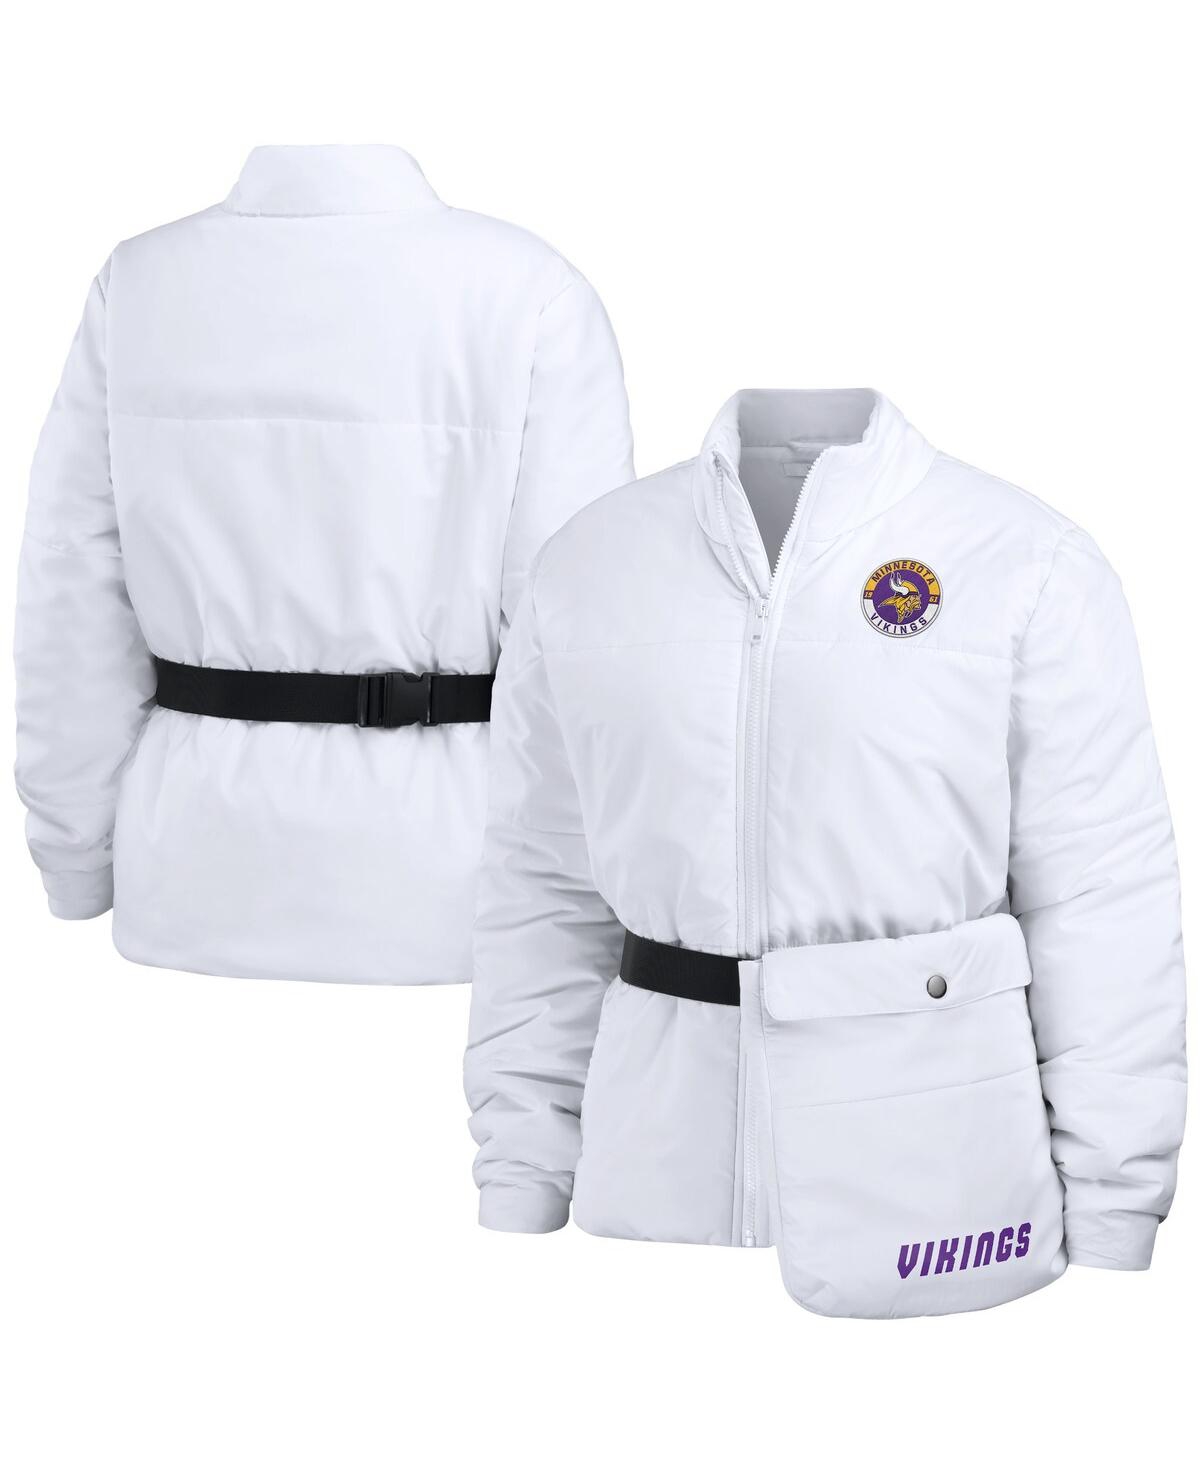 Wear By Erin Andrews Women's  White Minnesota Vikings Packaway Full-zip Puffer Jacket